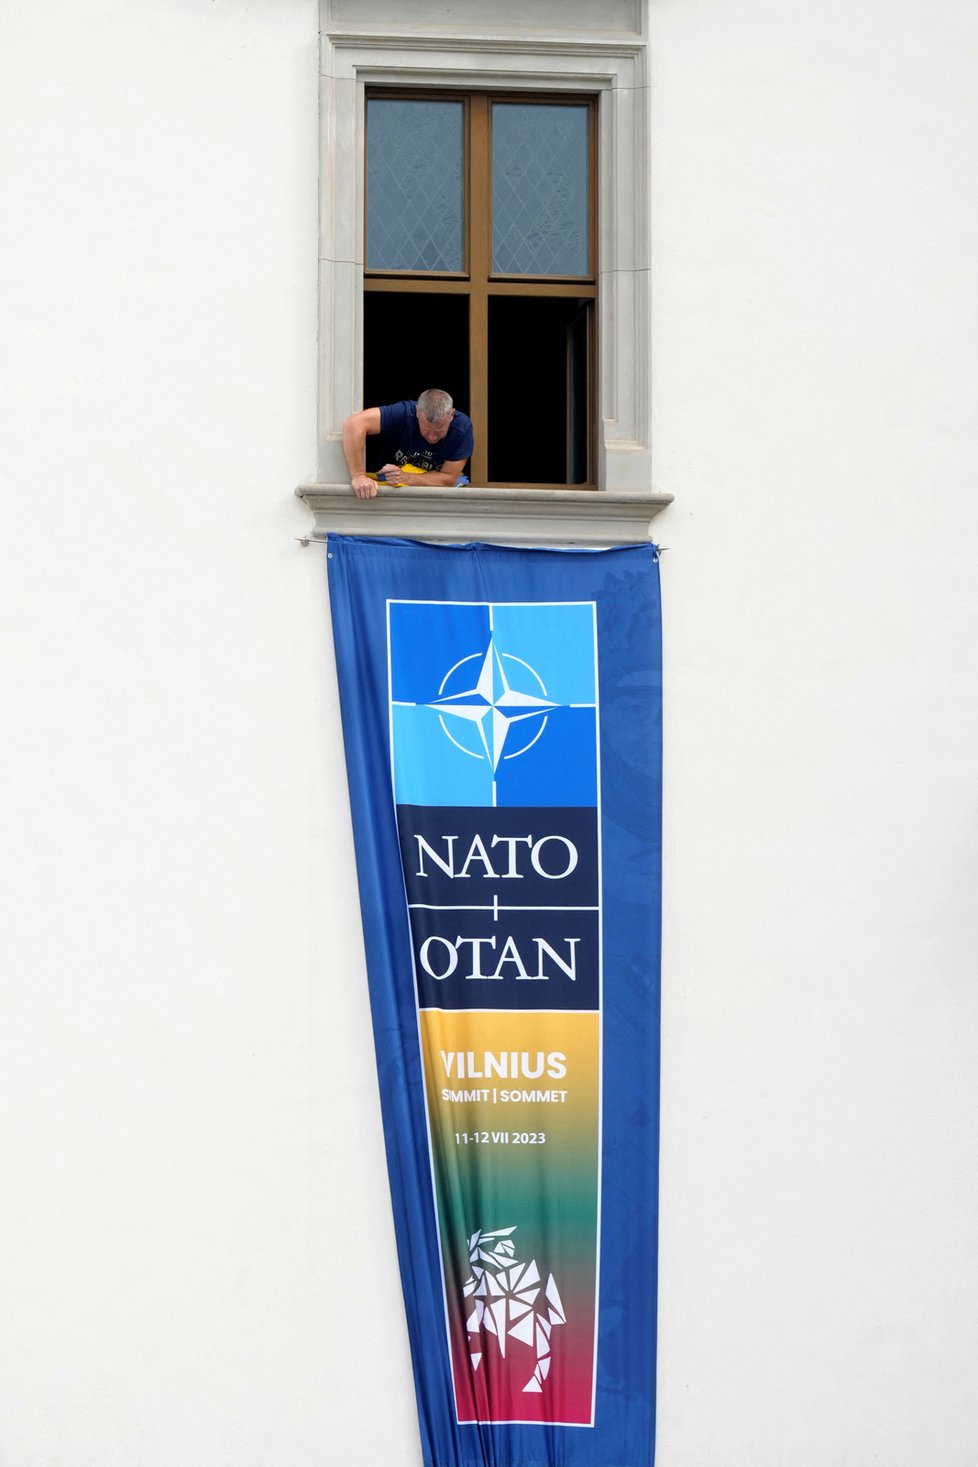 Summit NATO 2023 ve Vilniusu